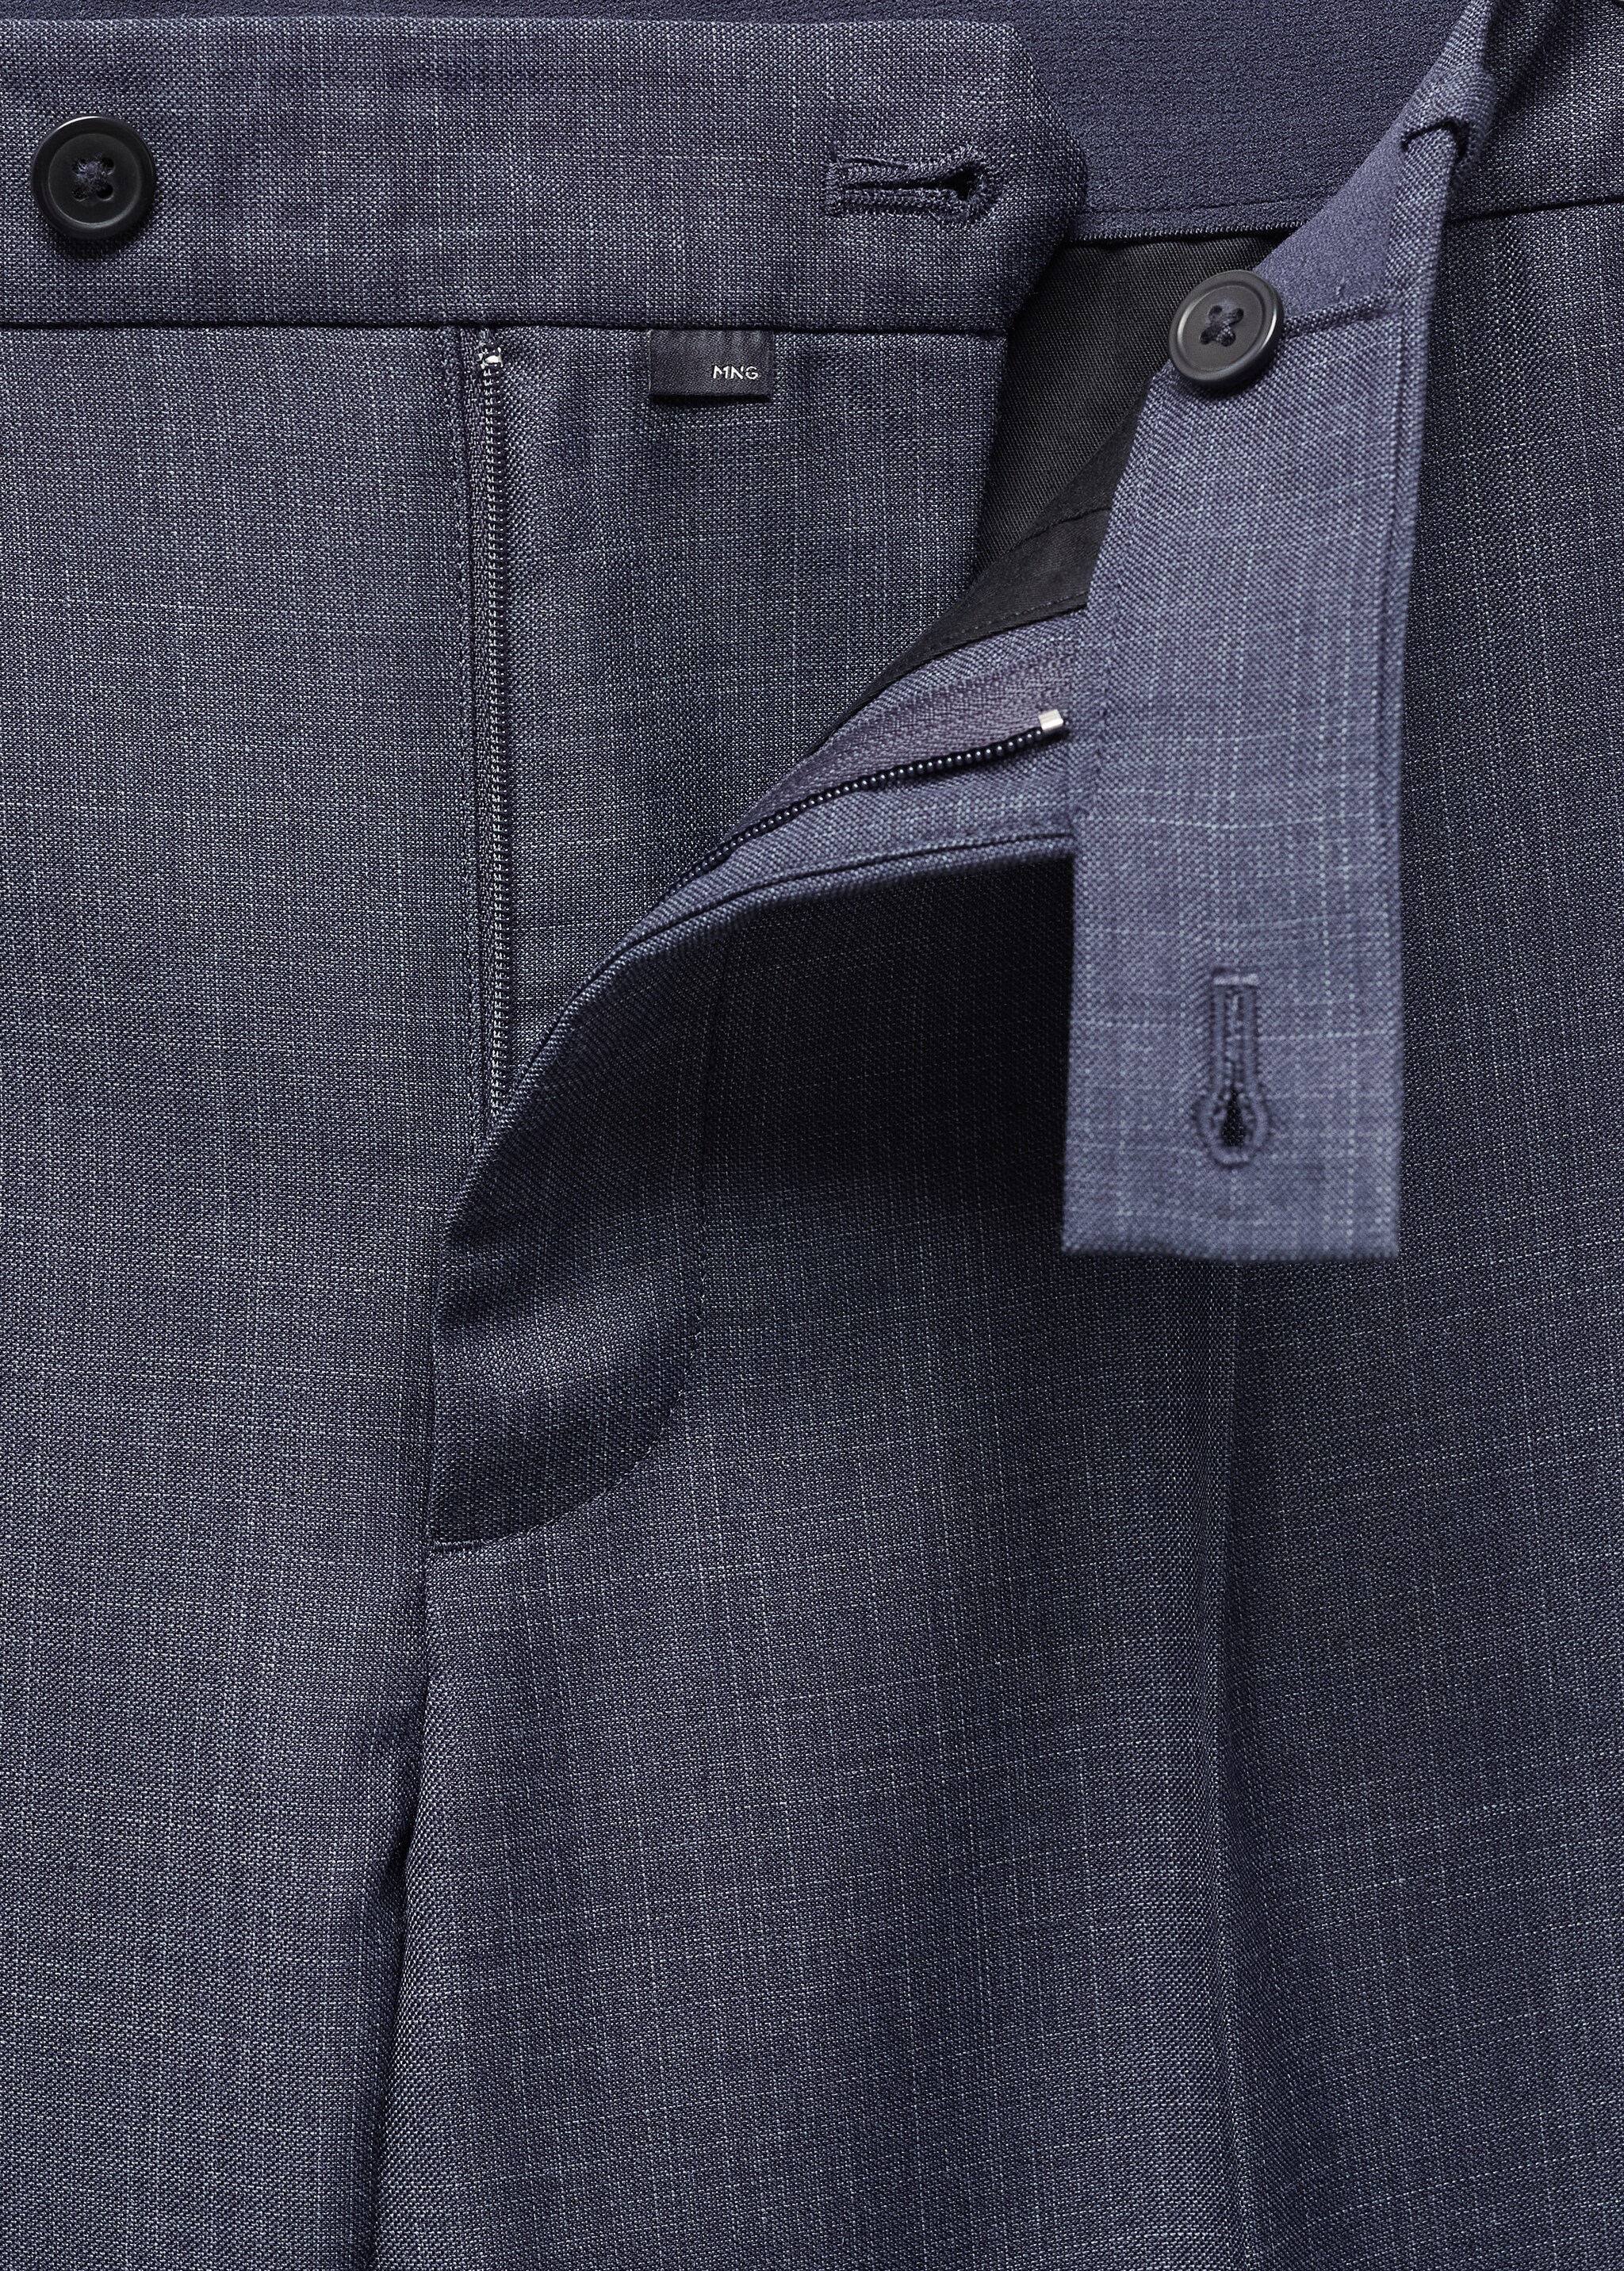 Pantalon laine froide détail pinces - Détail de l'article 8